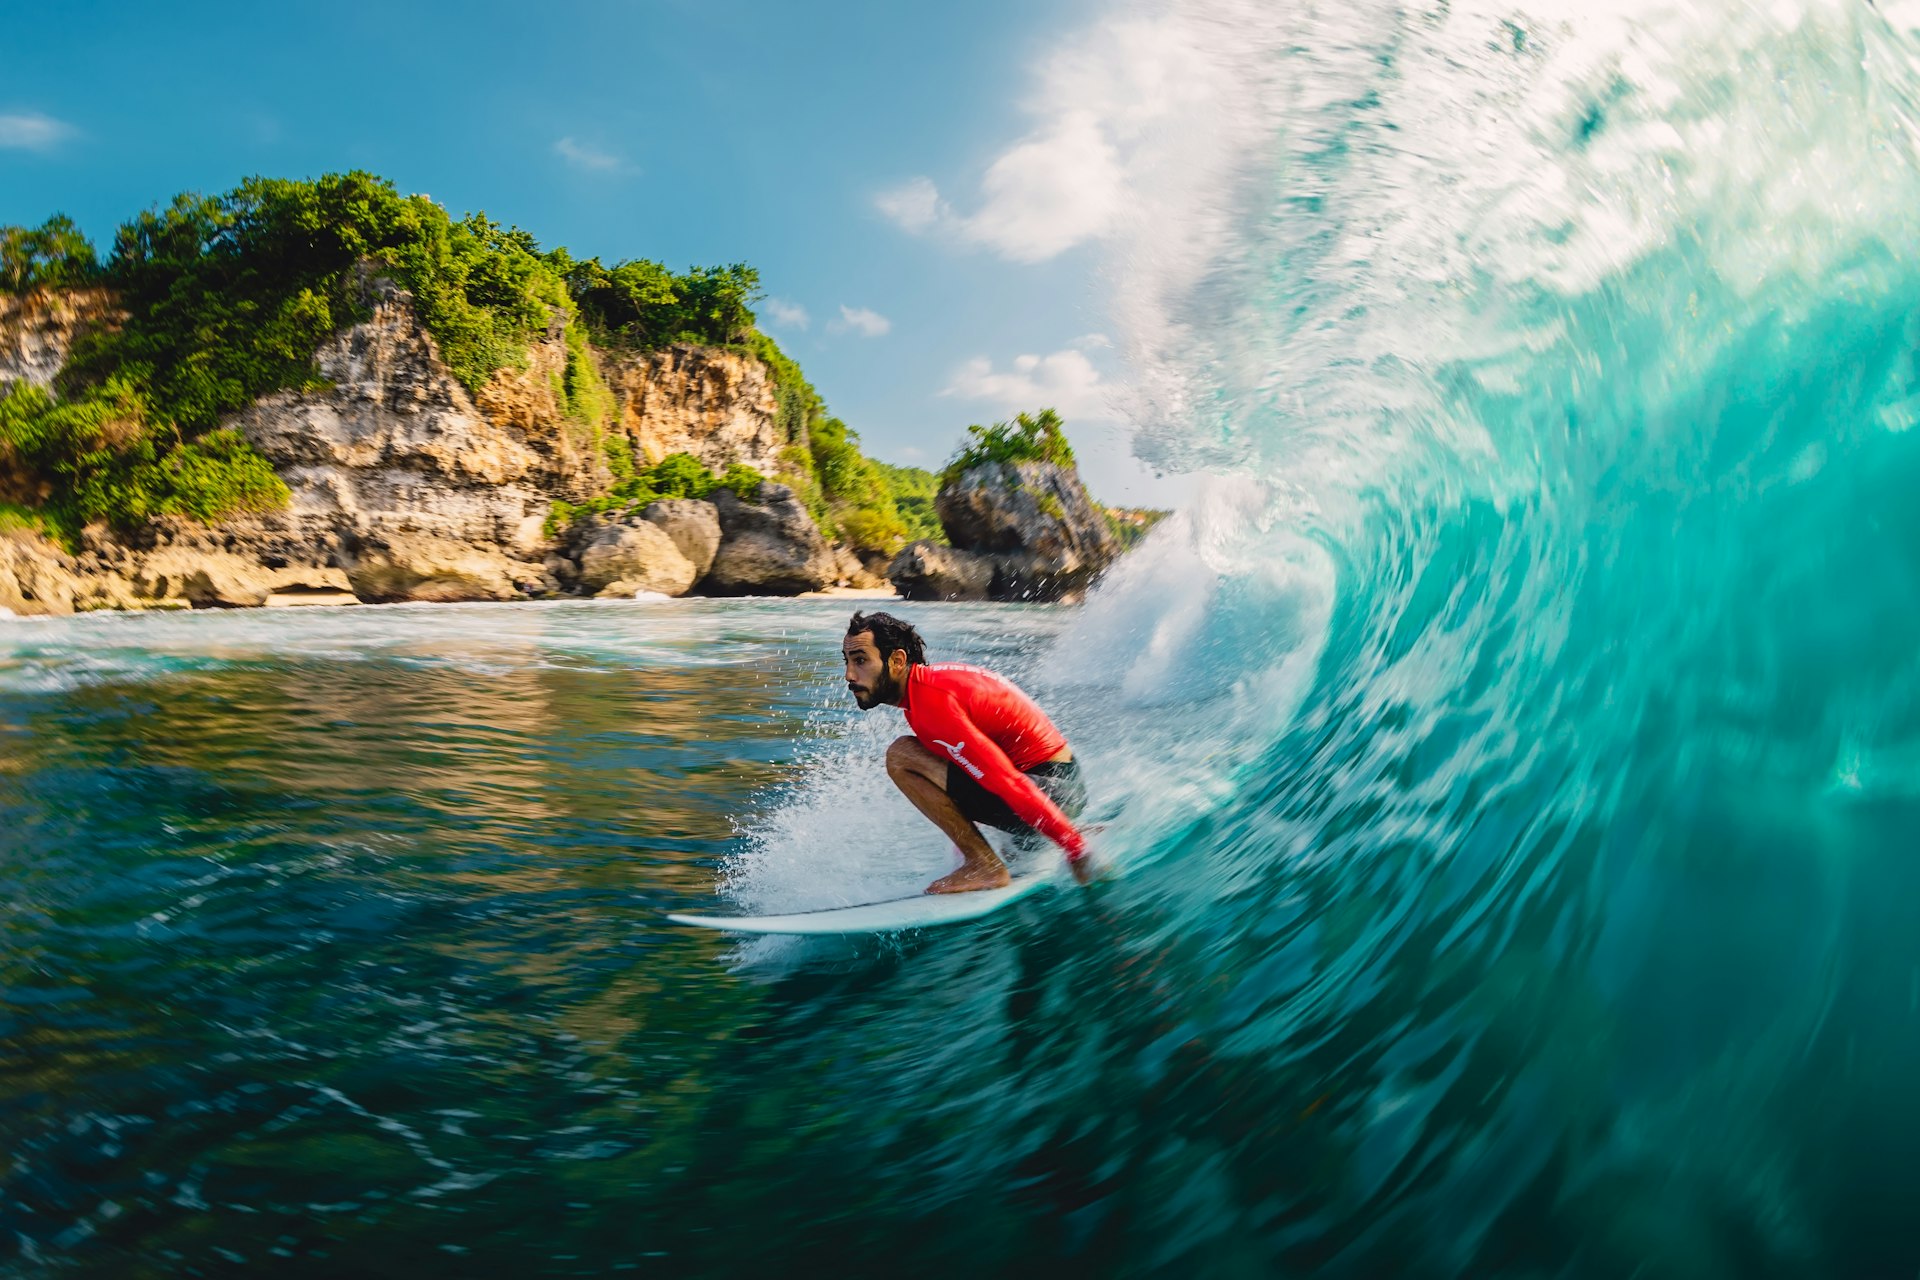 A surfer catches a barrel at Padang Padang, Bali